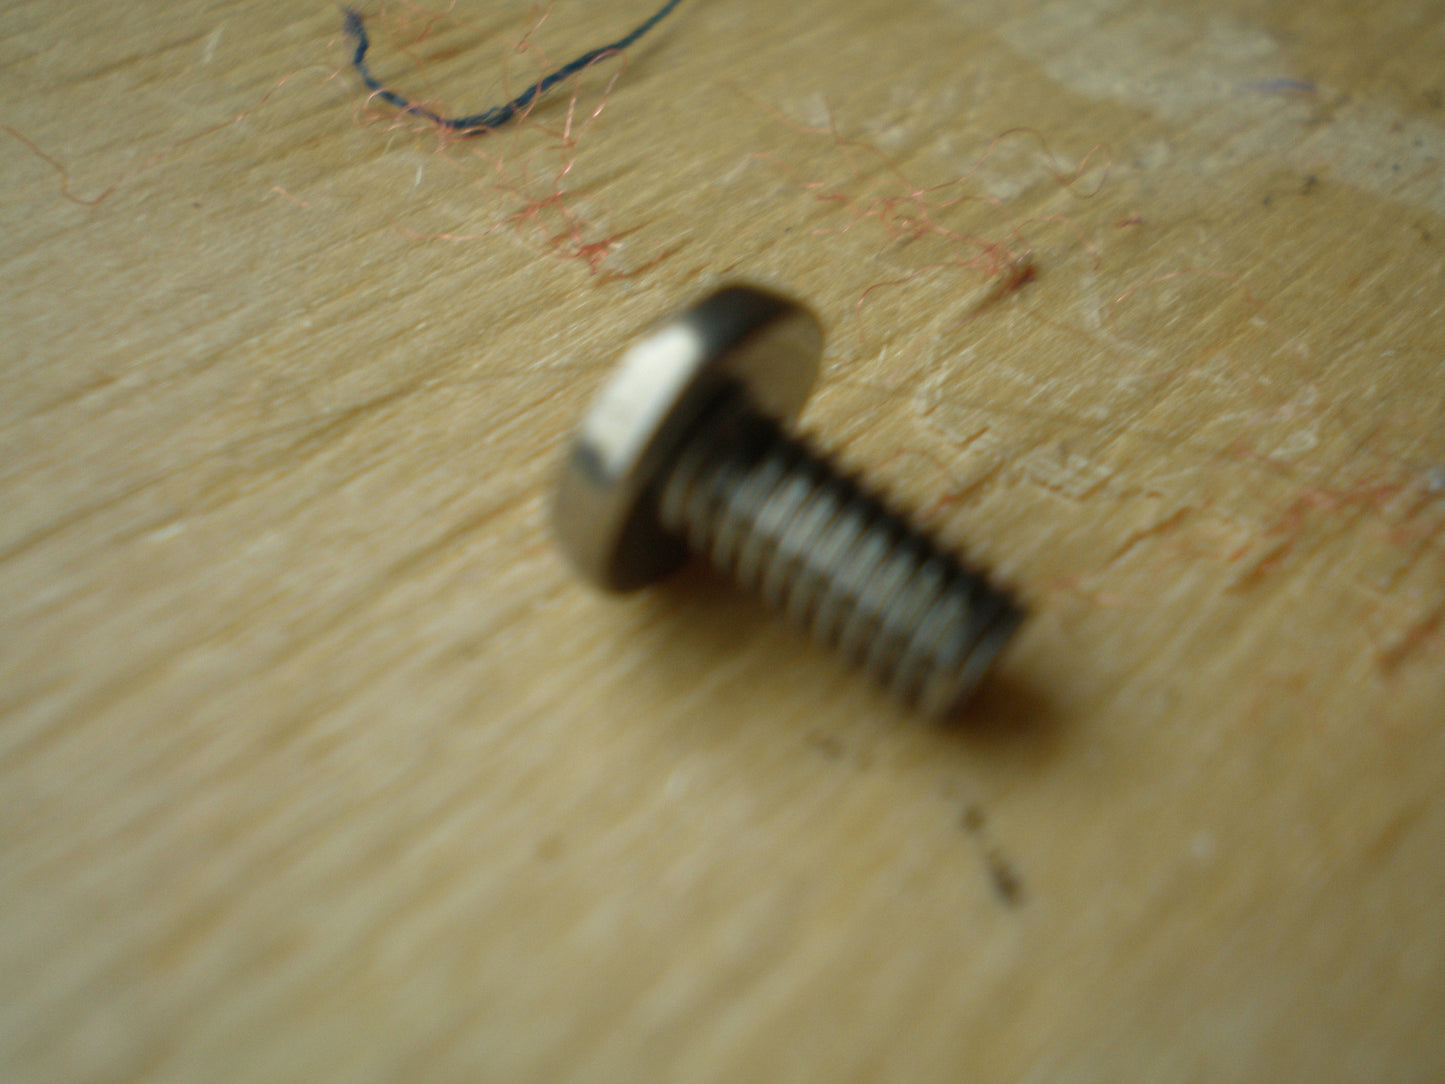 Tascam TSR8 side panel screw 10mm long 8mm wide cross head screw